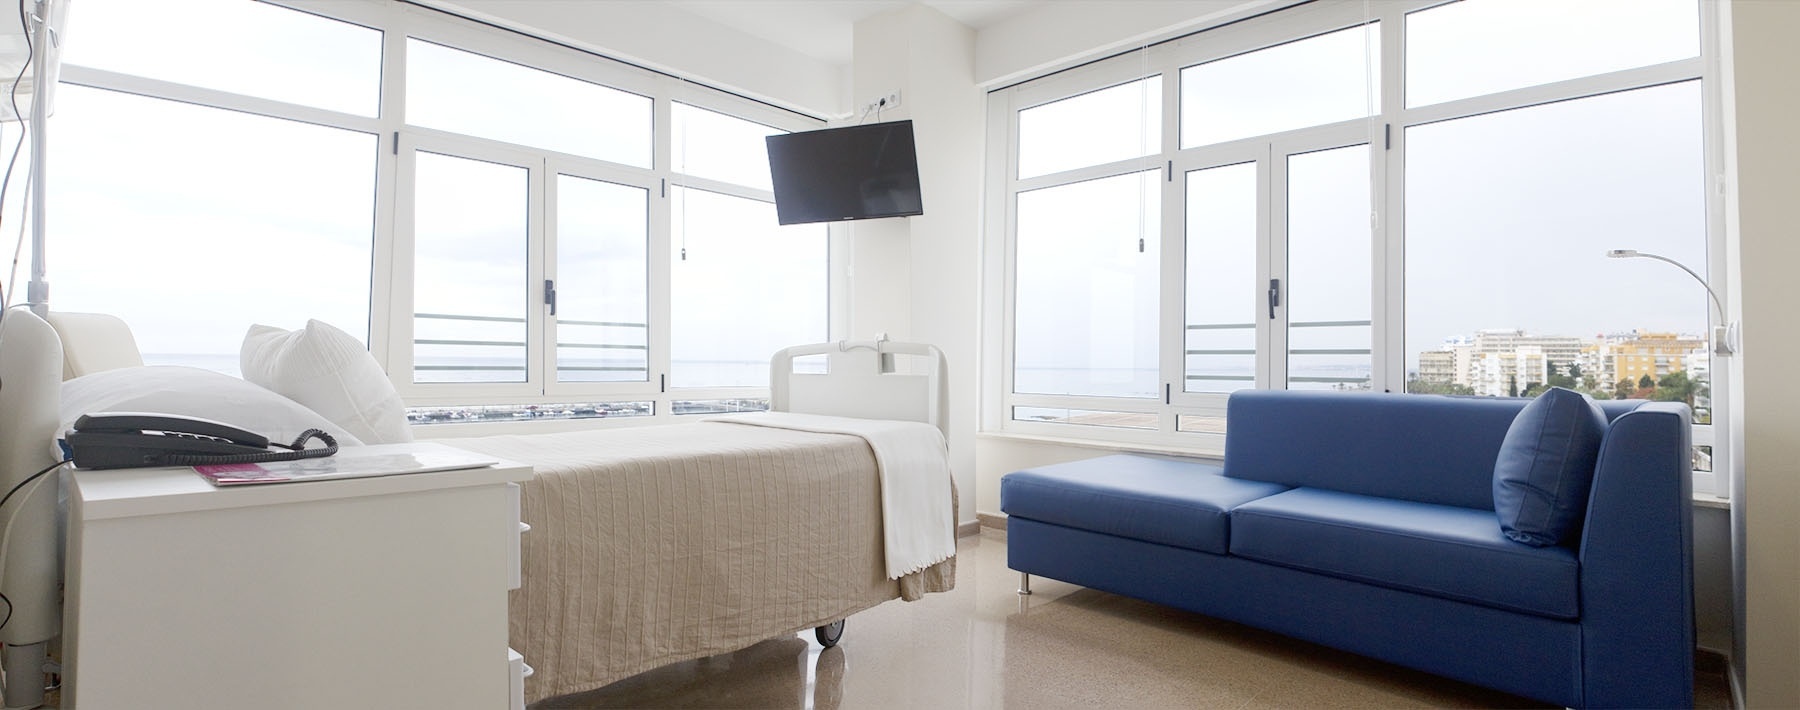 El Hospital Quirón Marbella completa la segunda fase de ampliación con la apertura de un área de hospitalización